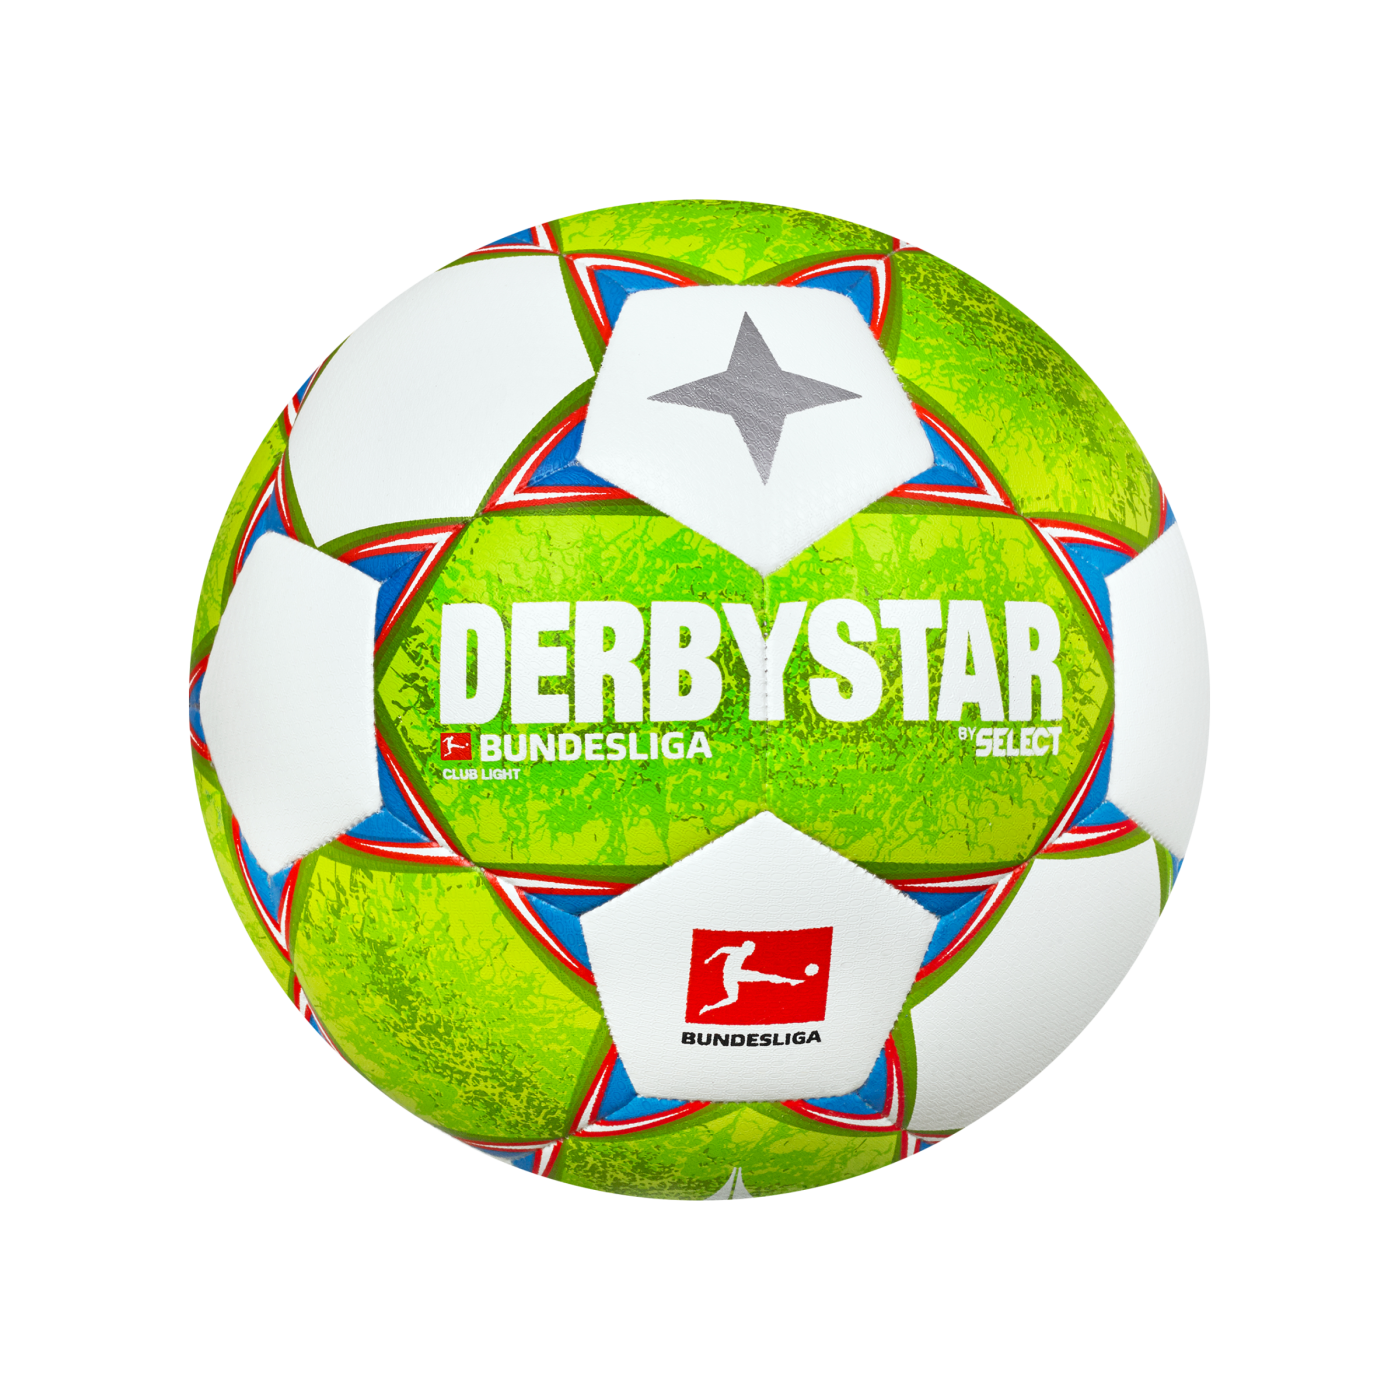 DERBYSTAR Club Light  Bundesliga Ball 350 Gramm  2020/21 